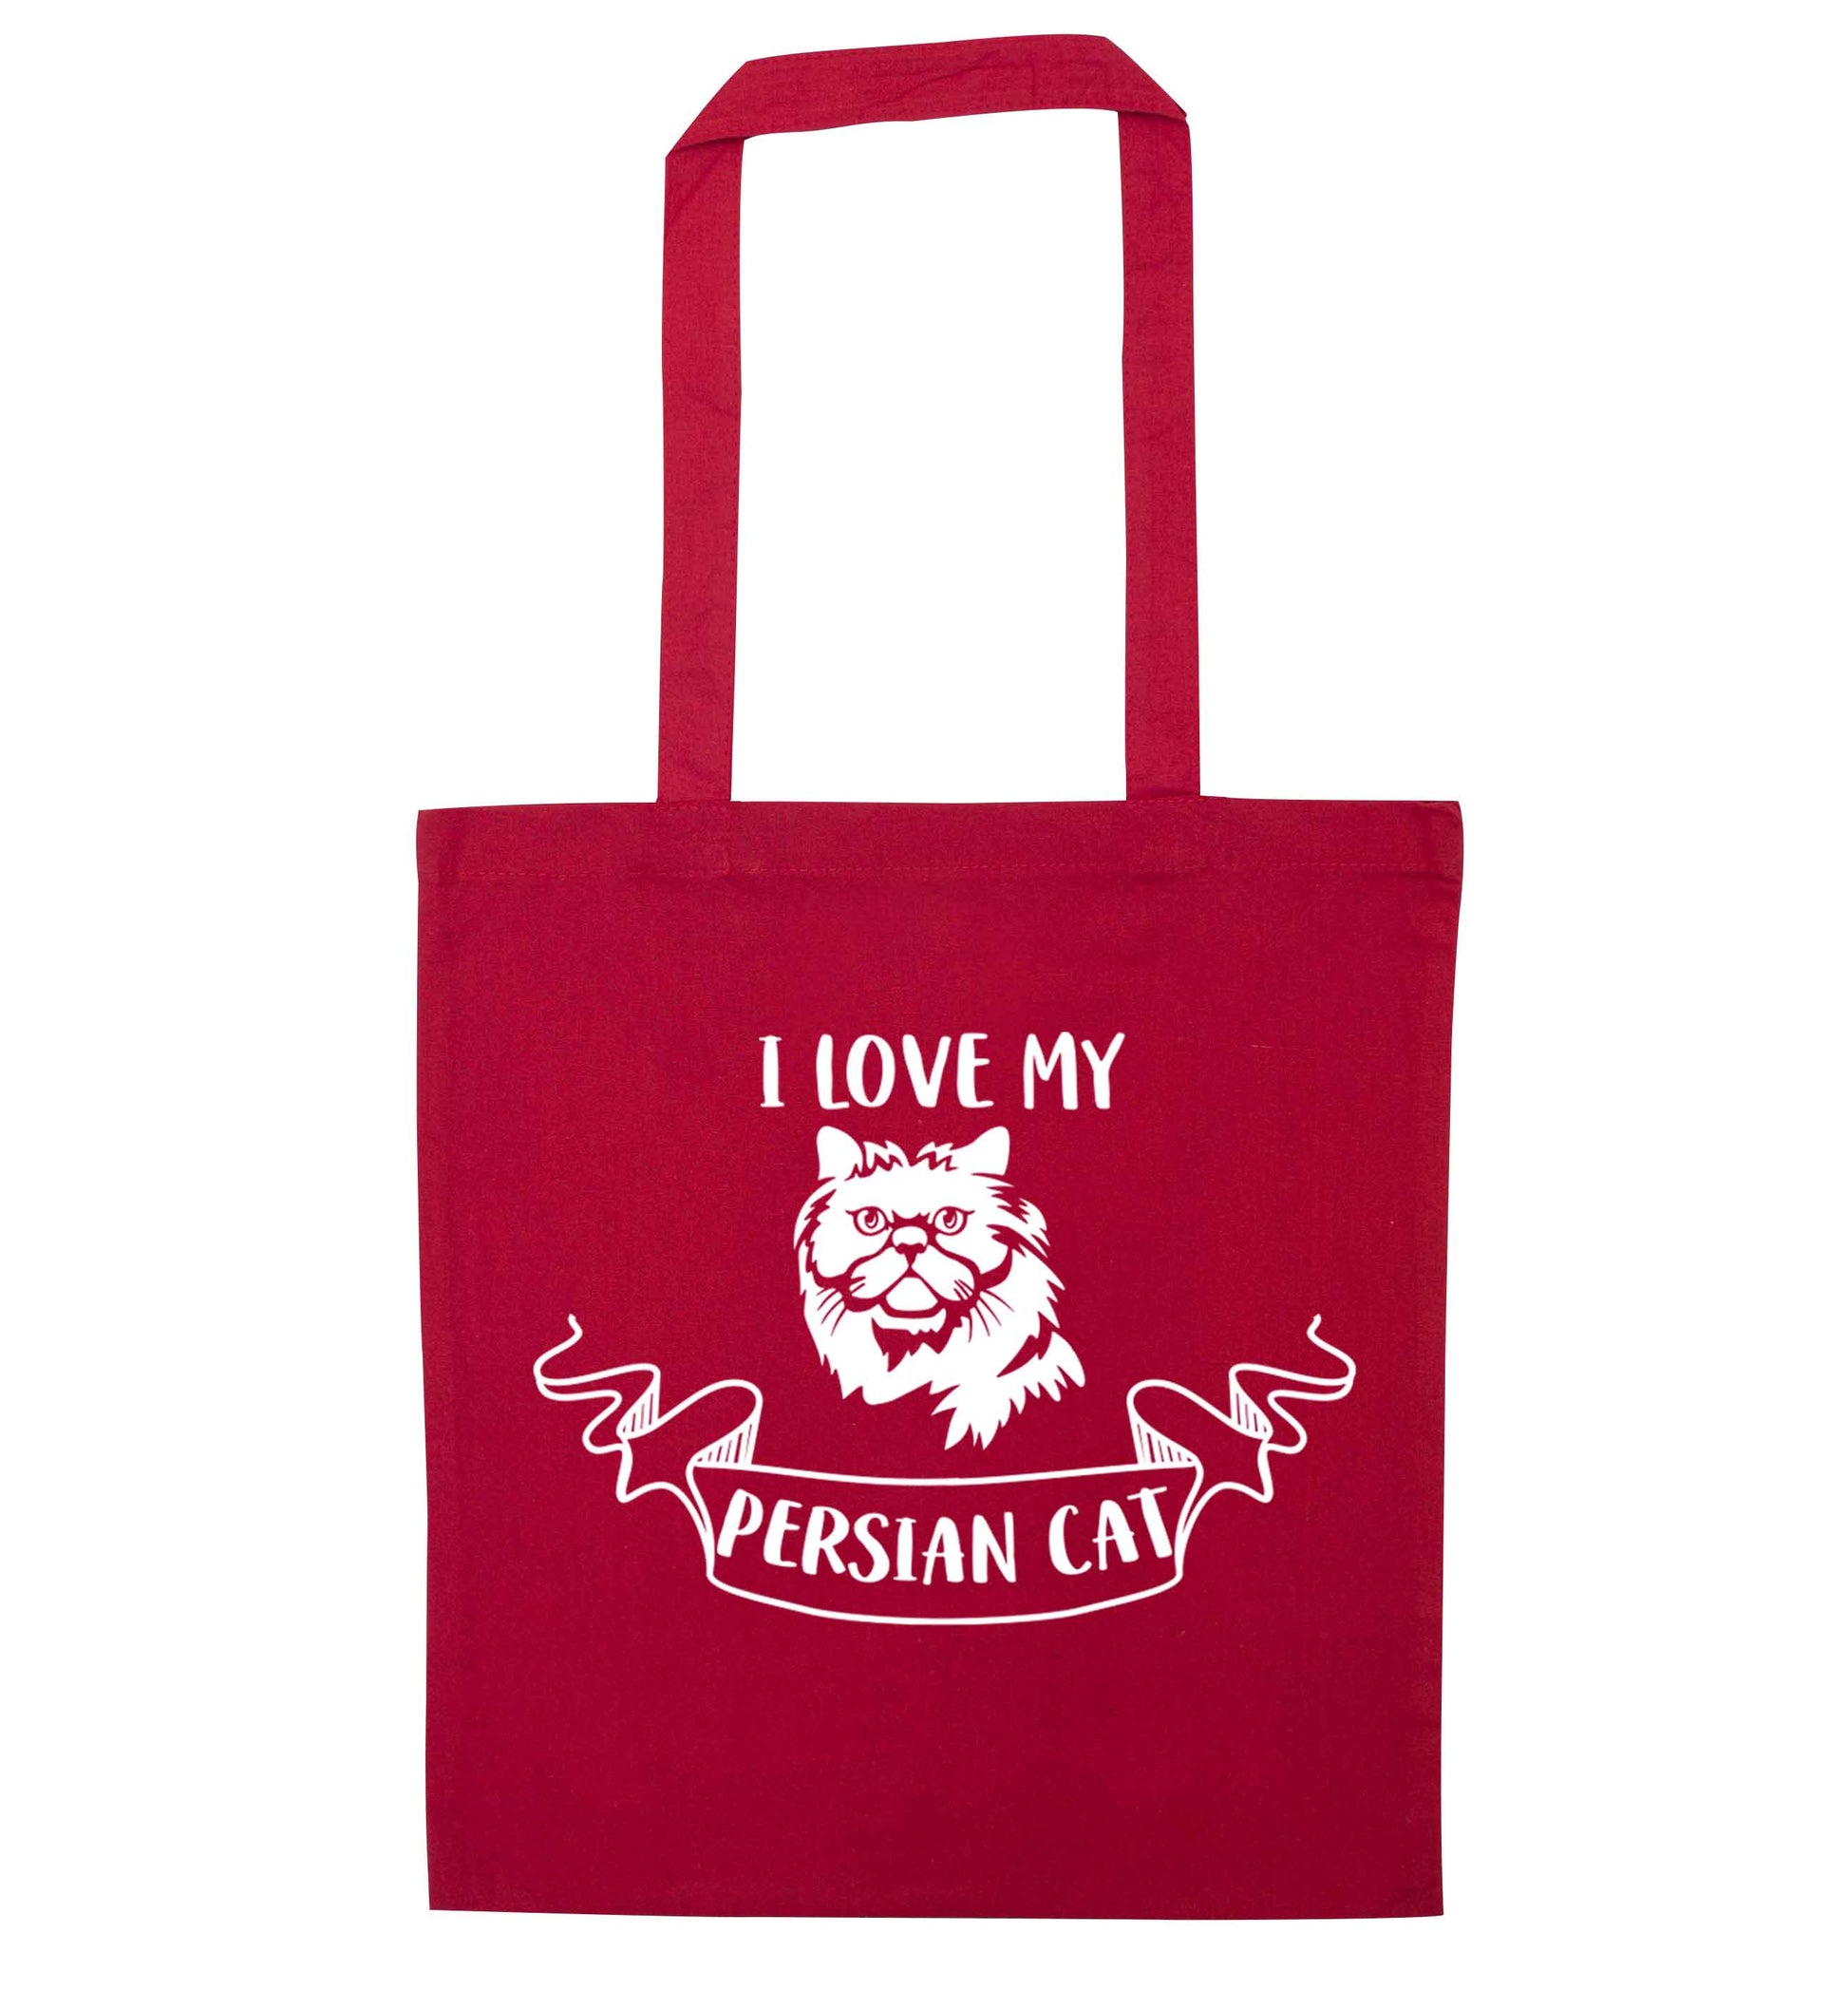 I love my persian cat red tote bag